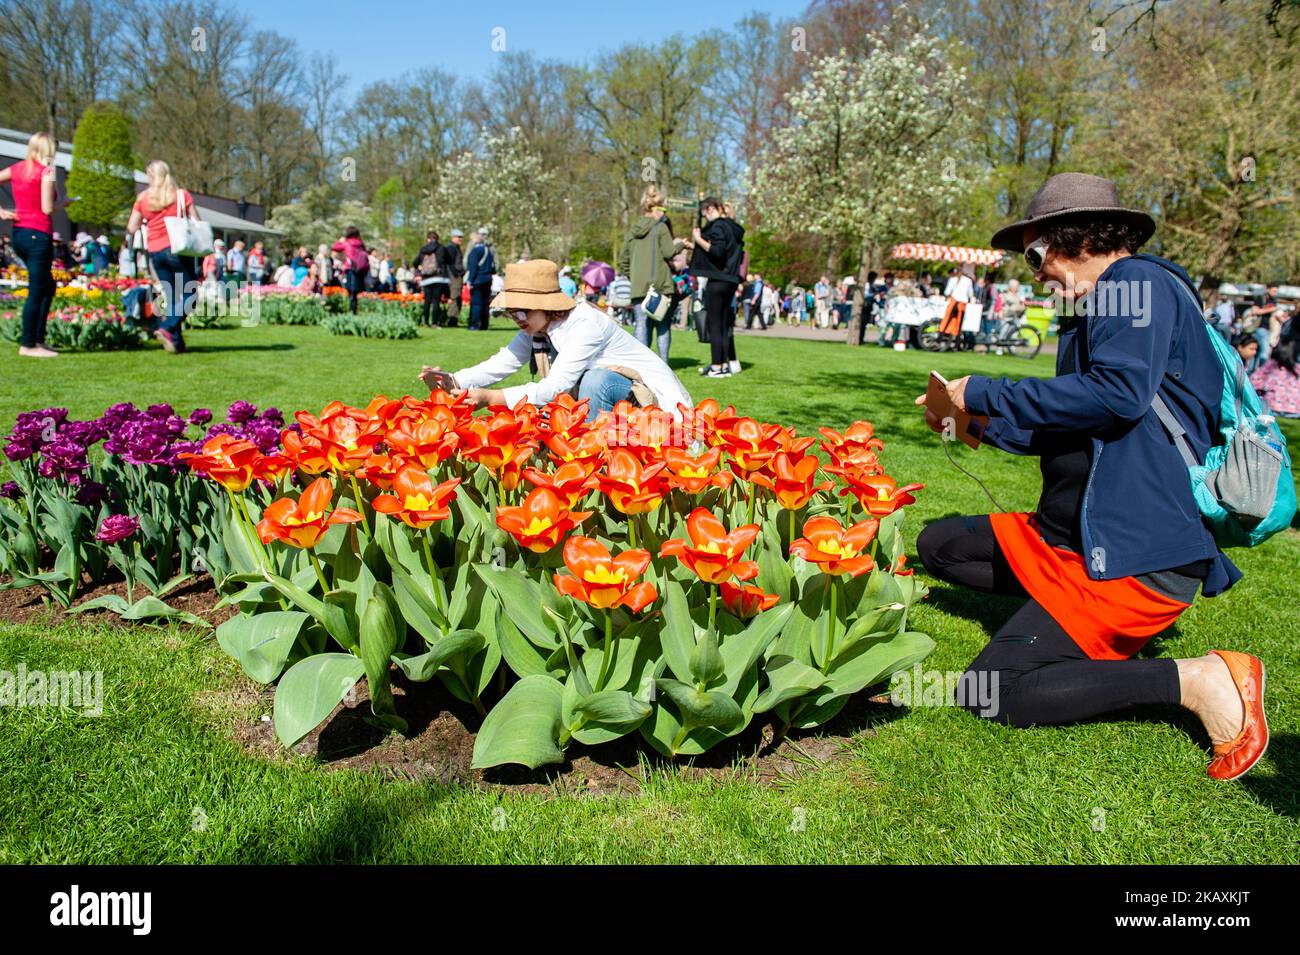 21 avril 2018 - Lisse. Keukenhof est également connu comme le jardin  d'Europe, l'un des plus grands jardins fleuris du monde à Lisse, aux pays- Bas. Le thème de Keukenhof 2018 est «